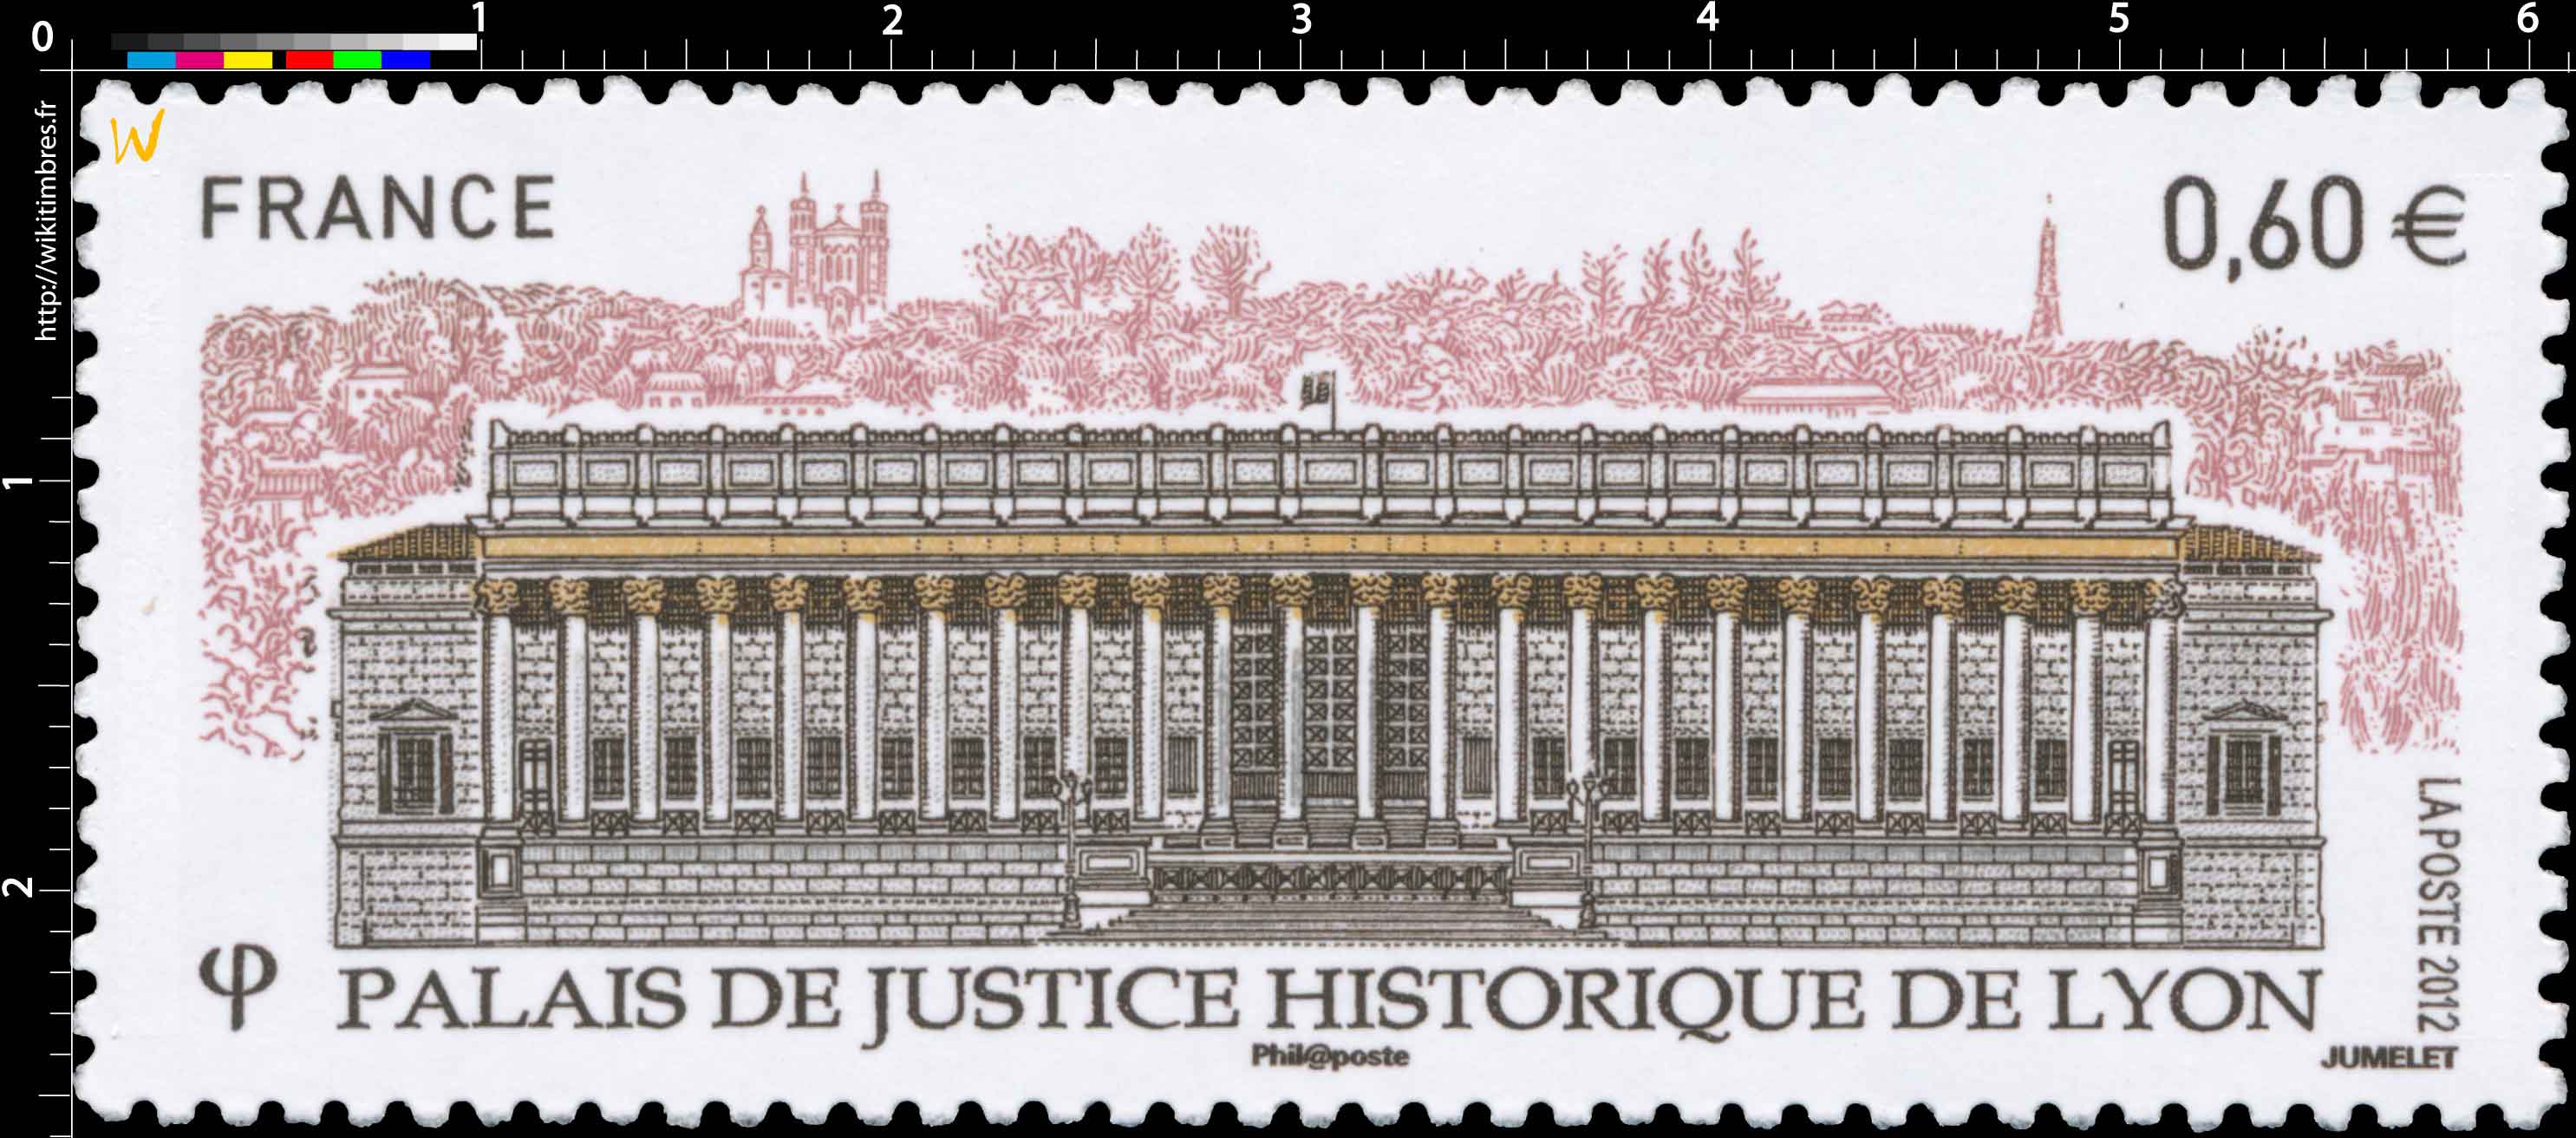 2012 Palais de justice historique de Lyon